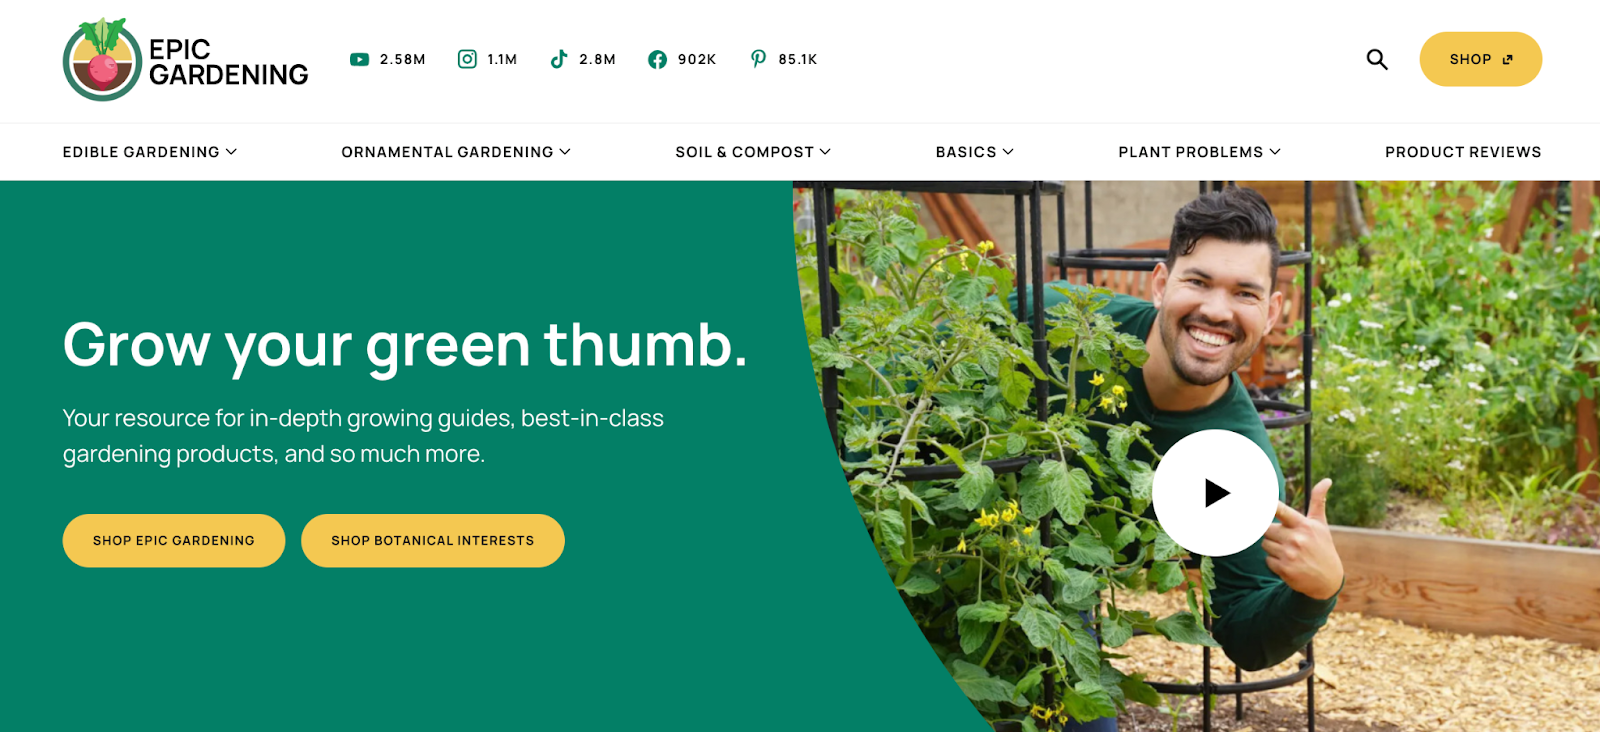 Niche website design example: Epic Gardening